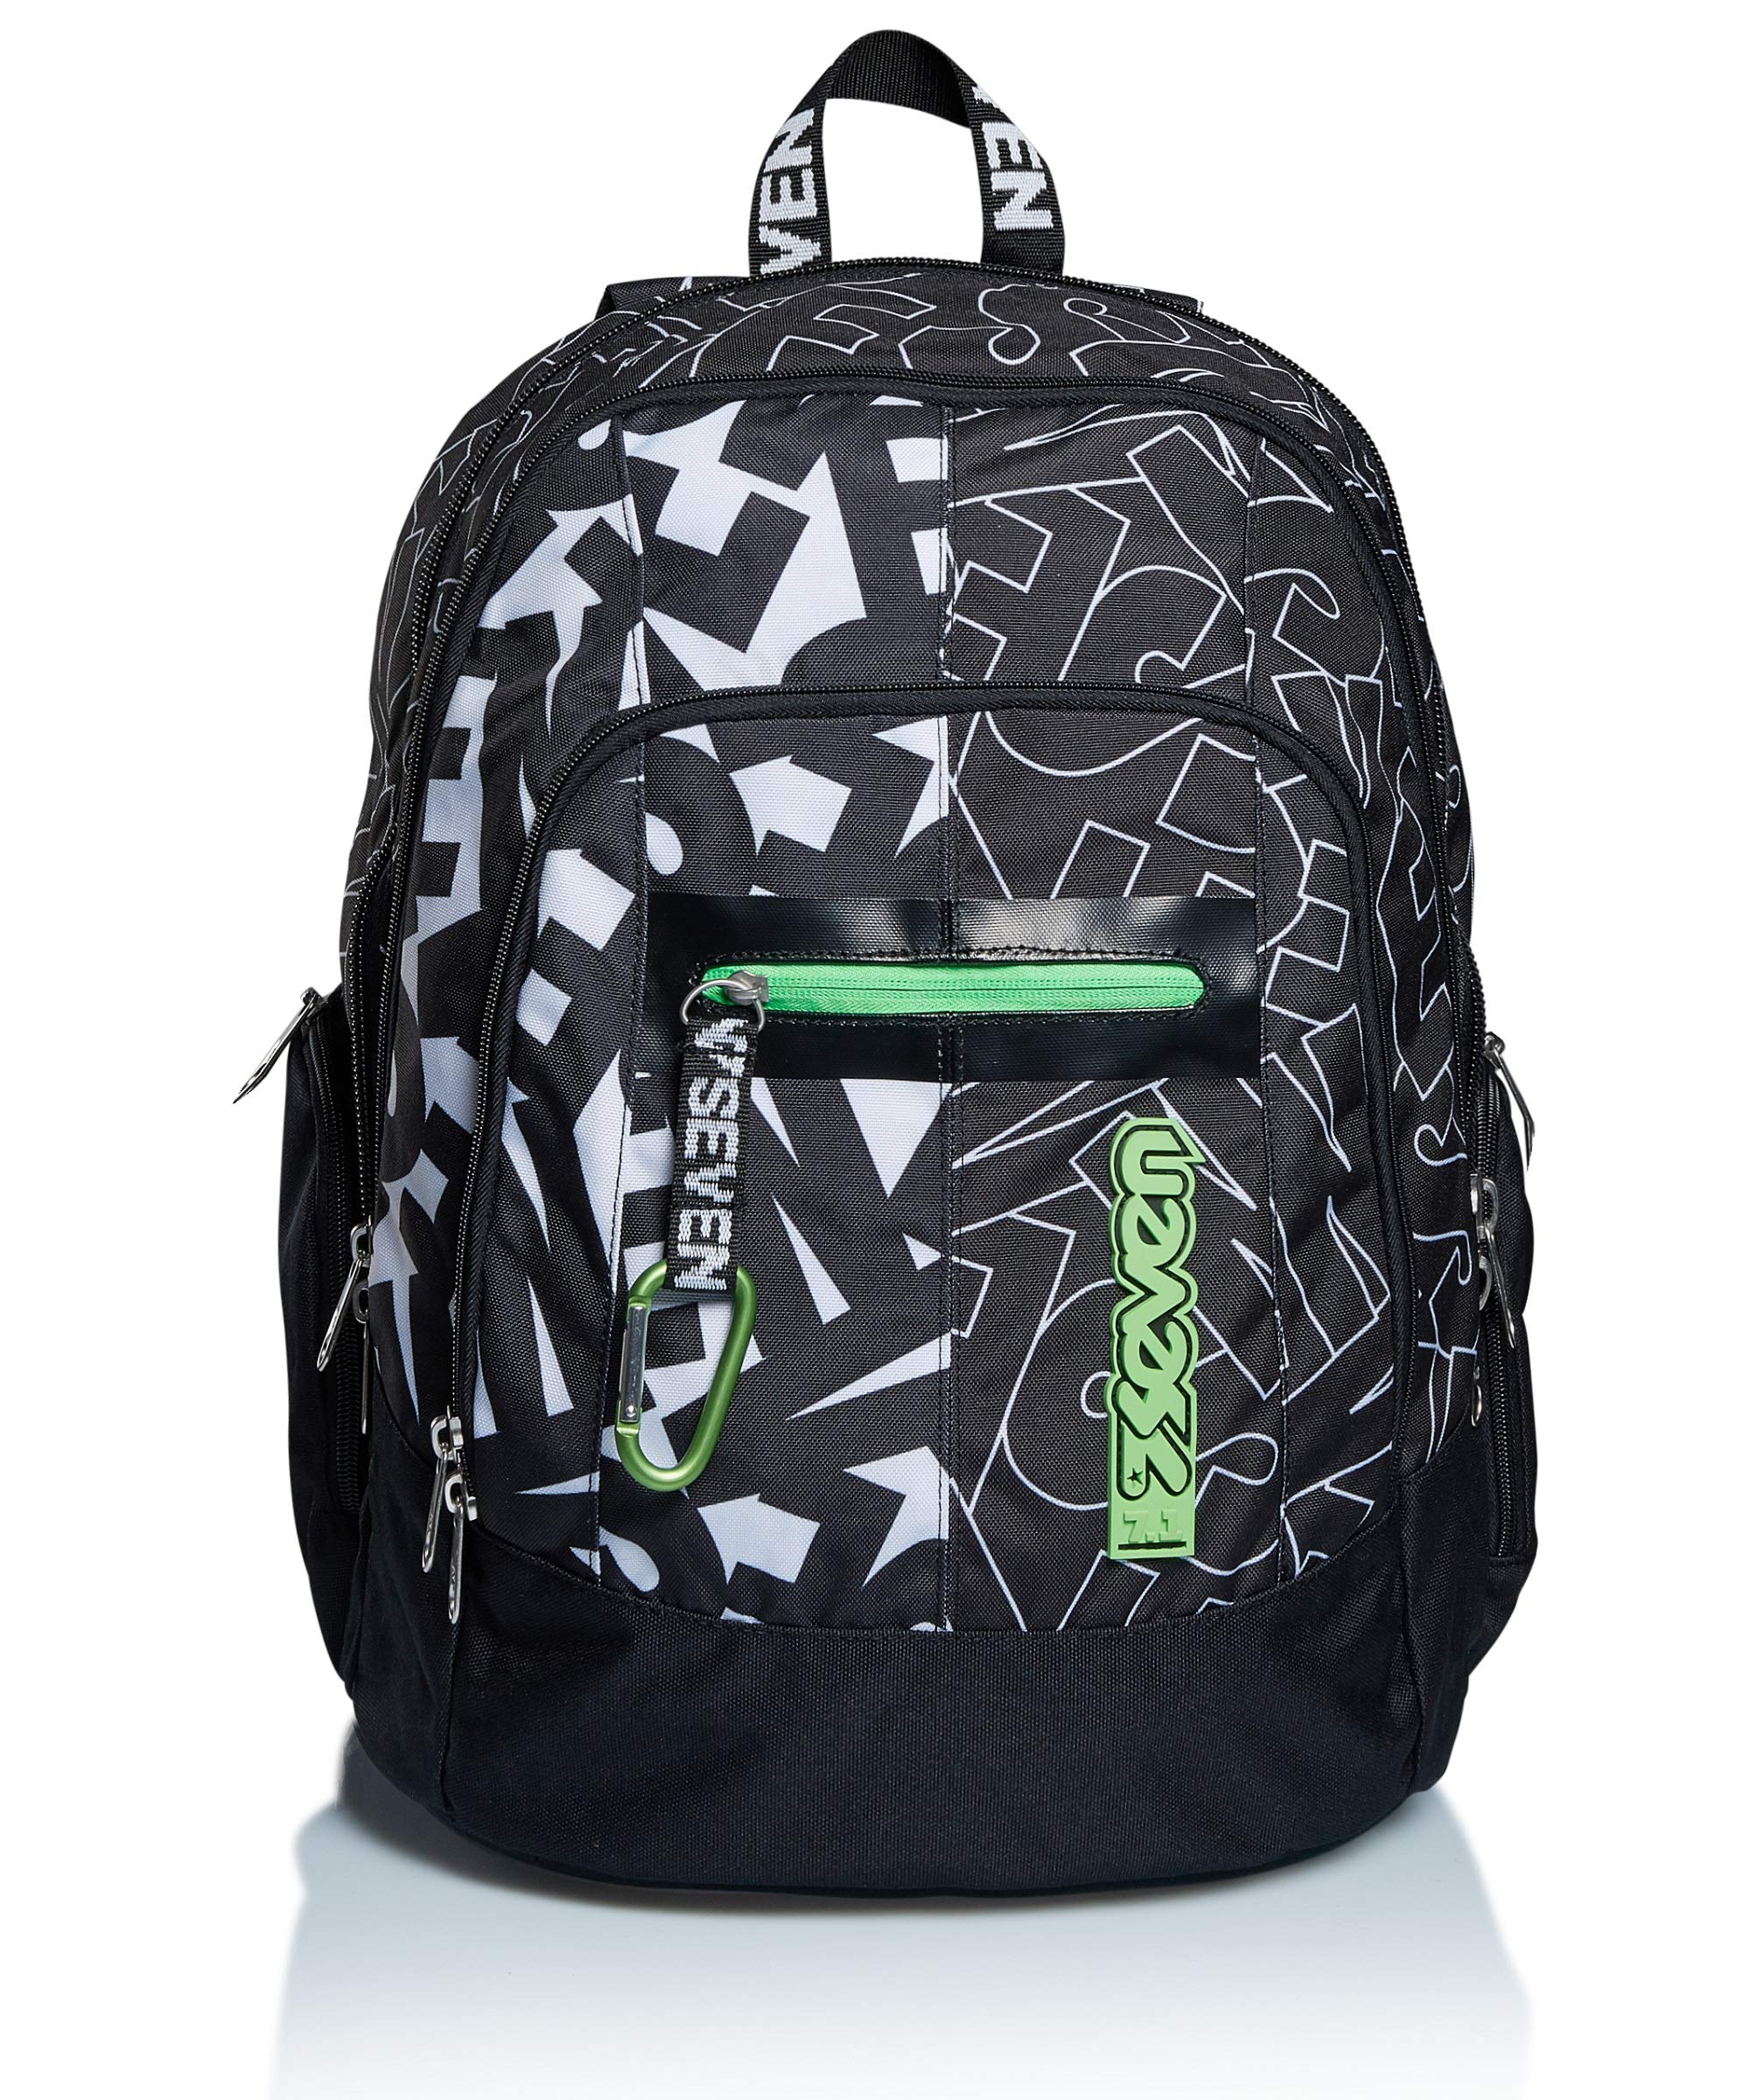 Seven Rucksack, Backpack für Schule, Uni & Freizeit, Geräumige Schultasche für Teenager, Mädchen, Jungen, Gepolsterter Schulranzen; mit Laptopfach -Advanced ALPHA BEAT, schwarz